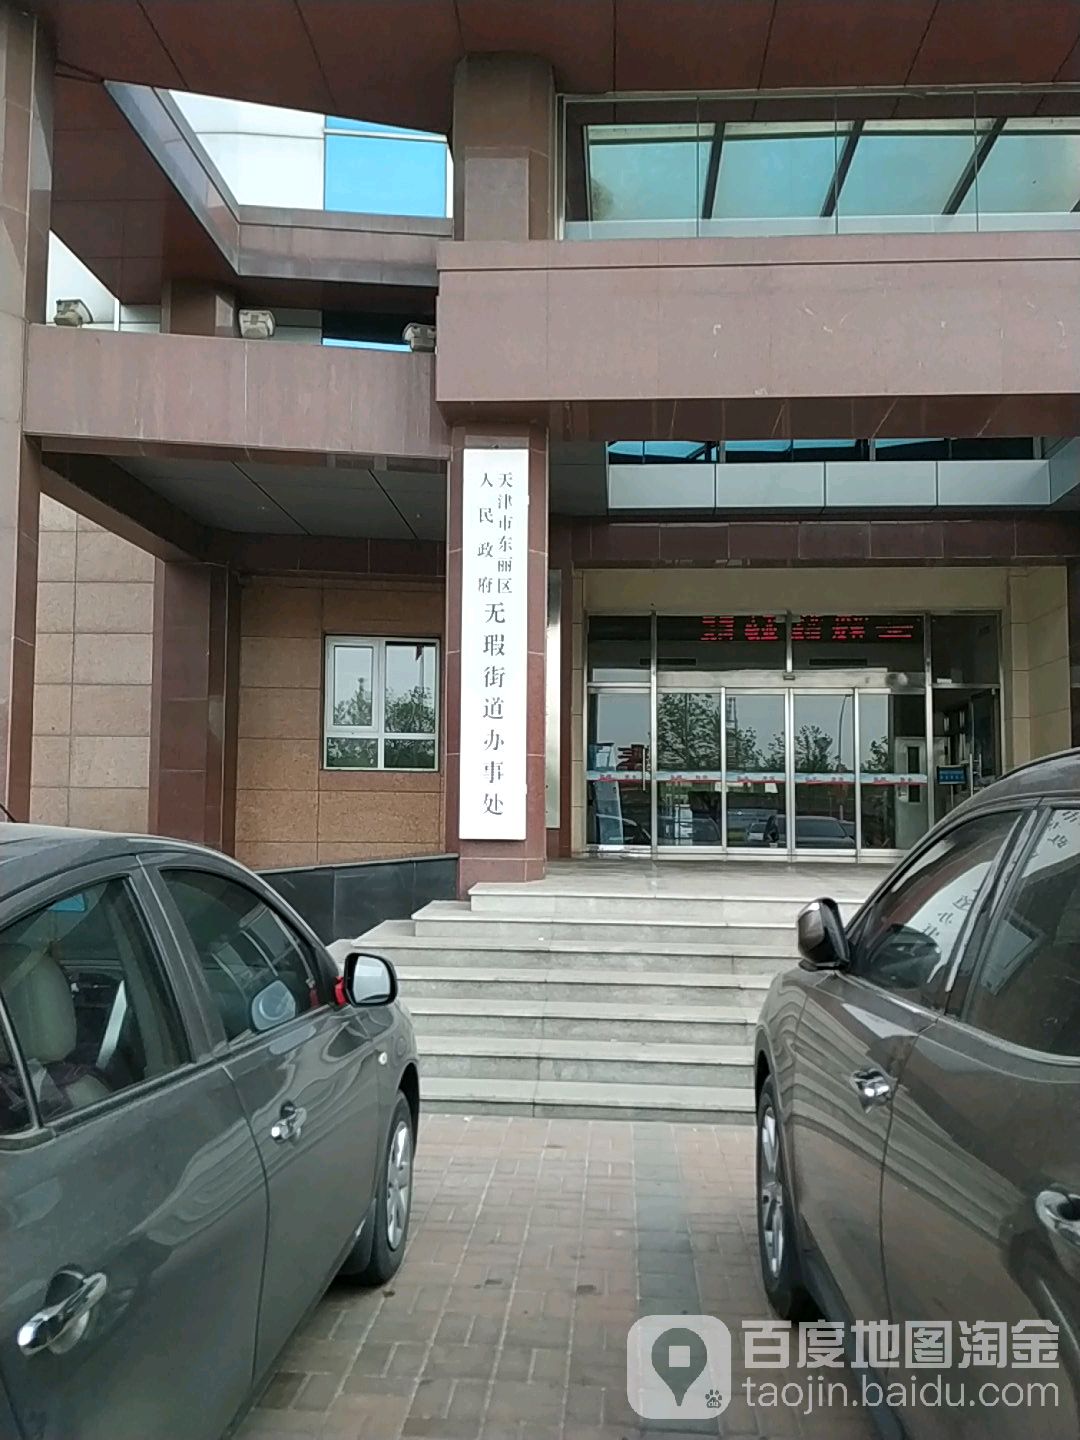 天津市东丽区无瑕街道综合办公楼6层